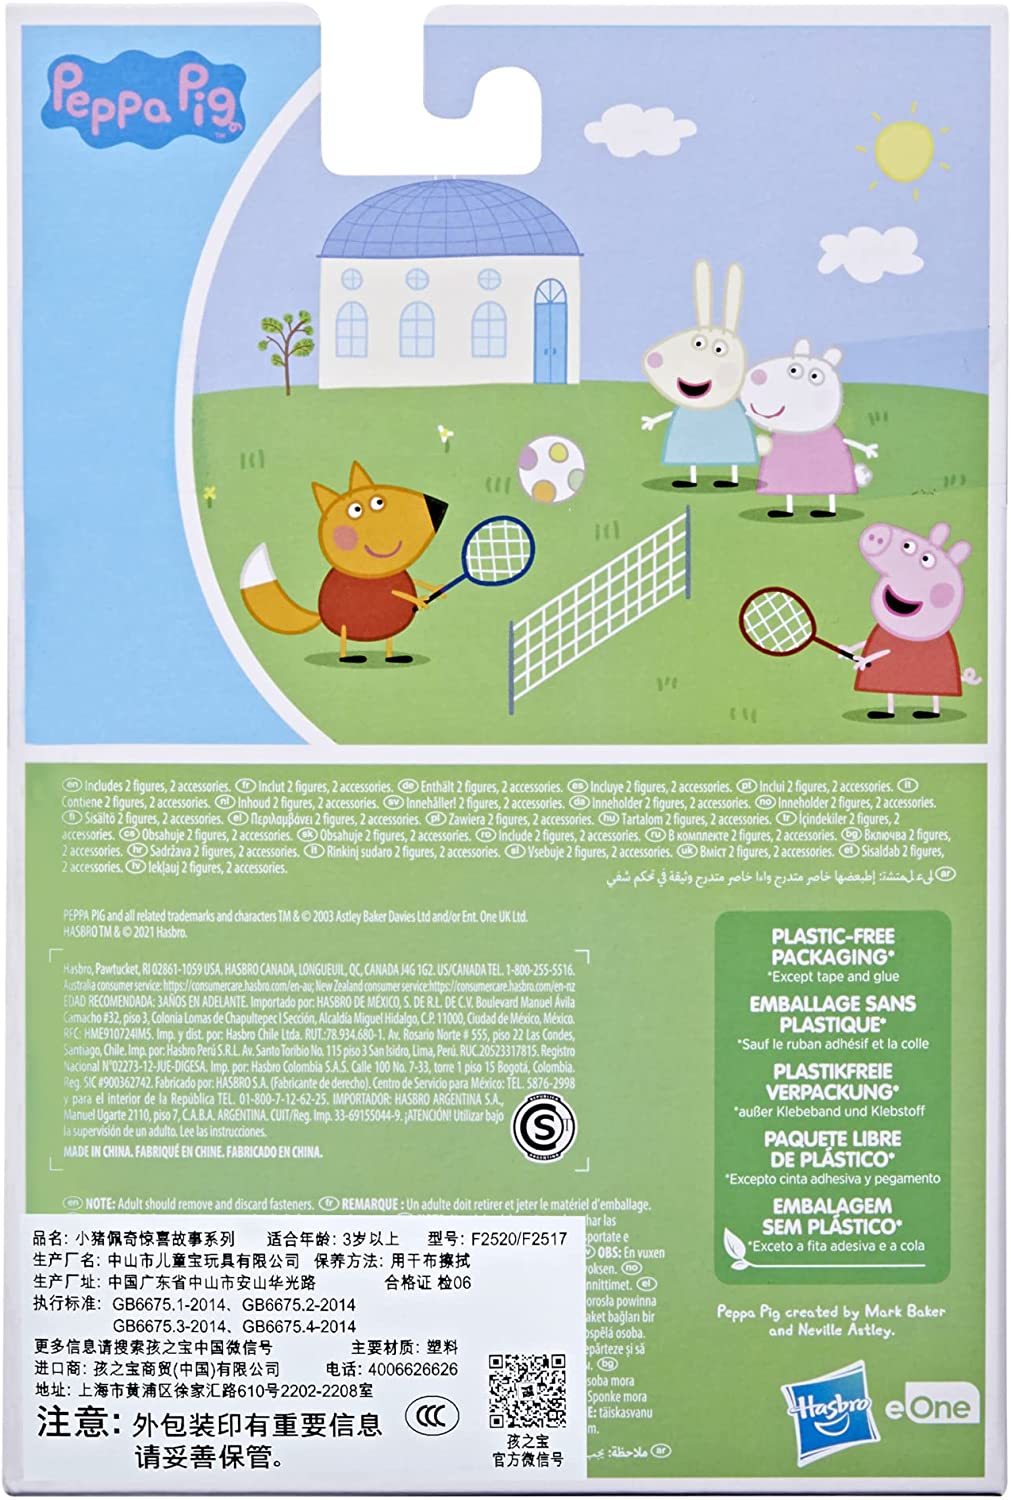 Peppa Pig - Peppas Tennis Surprise Pack